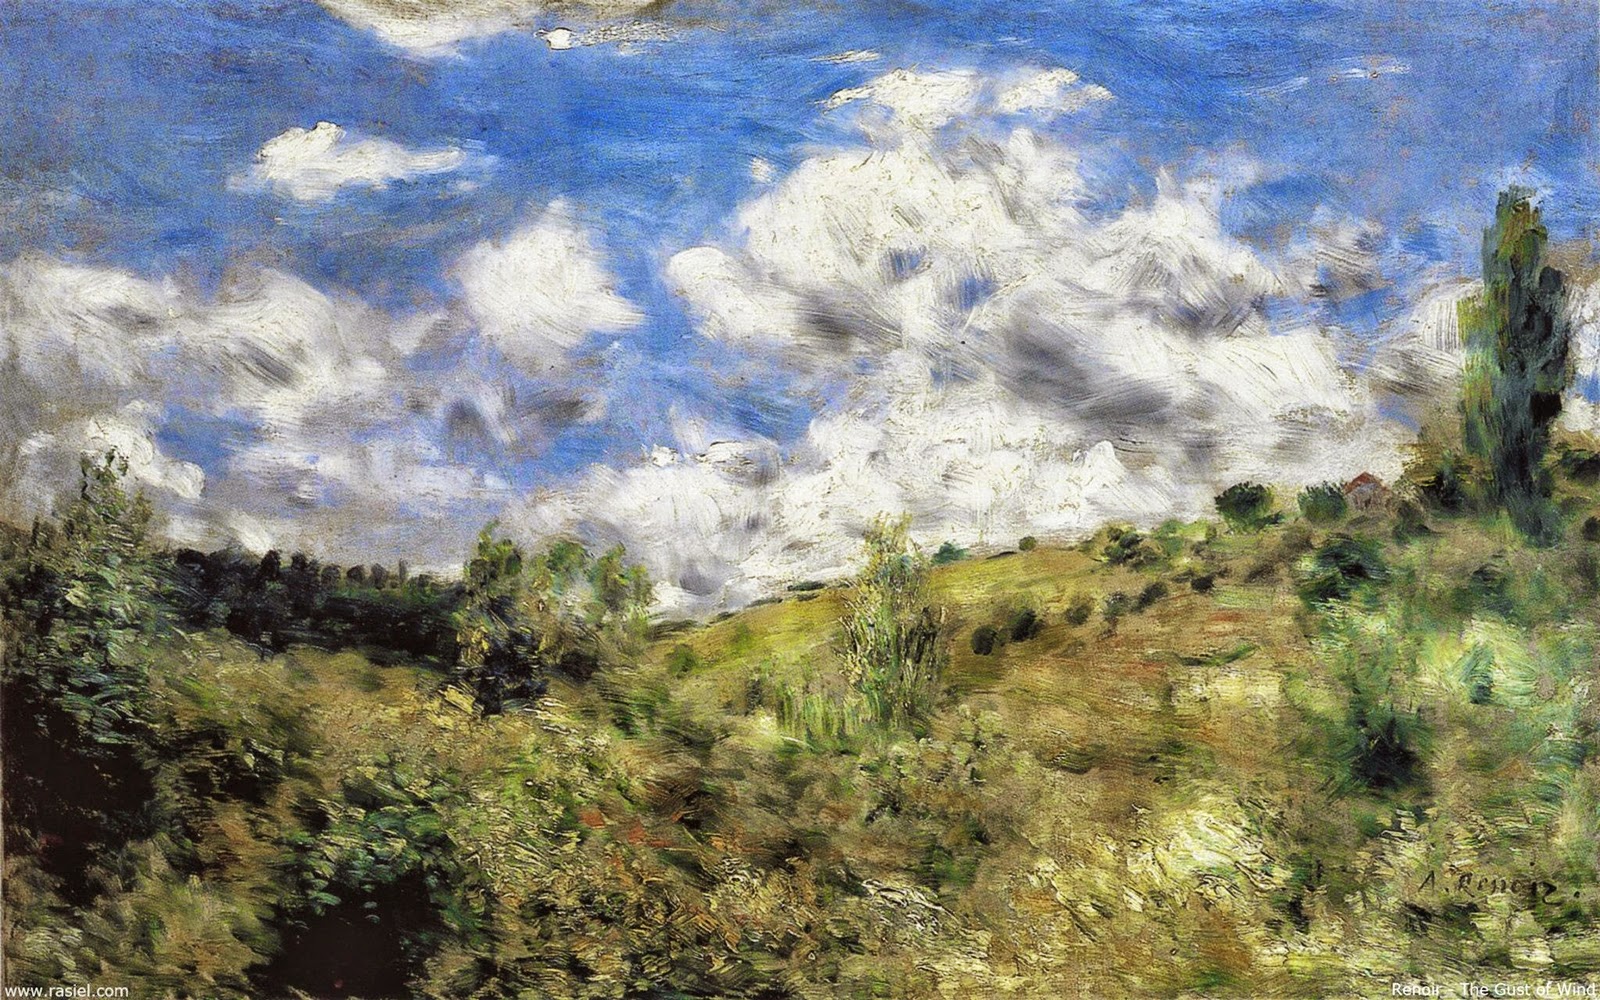 Pierre+Auguste+Renoir-1841-1-19 (302).jpg